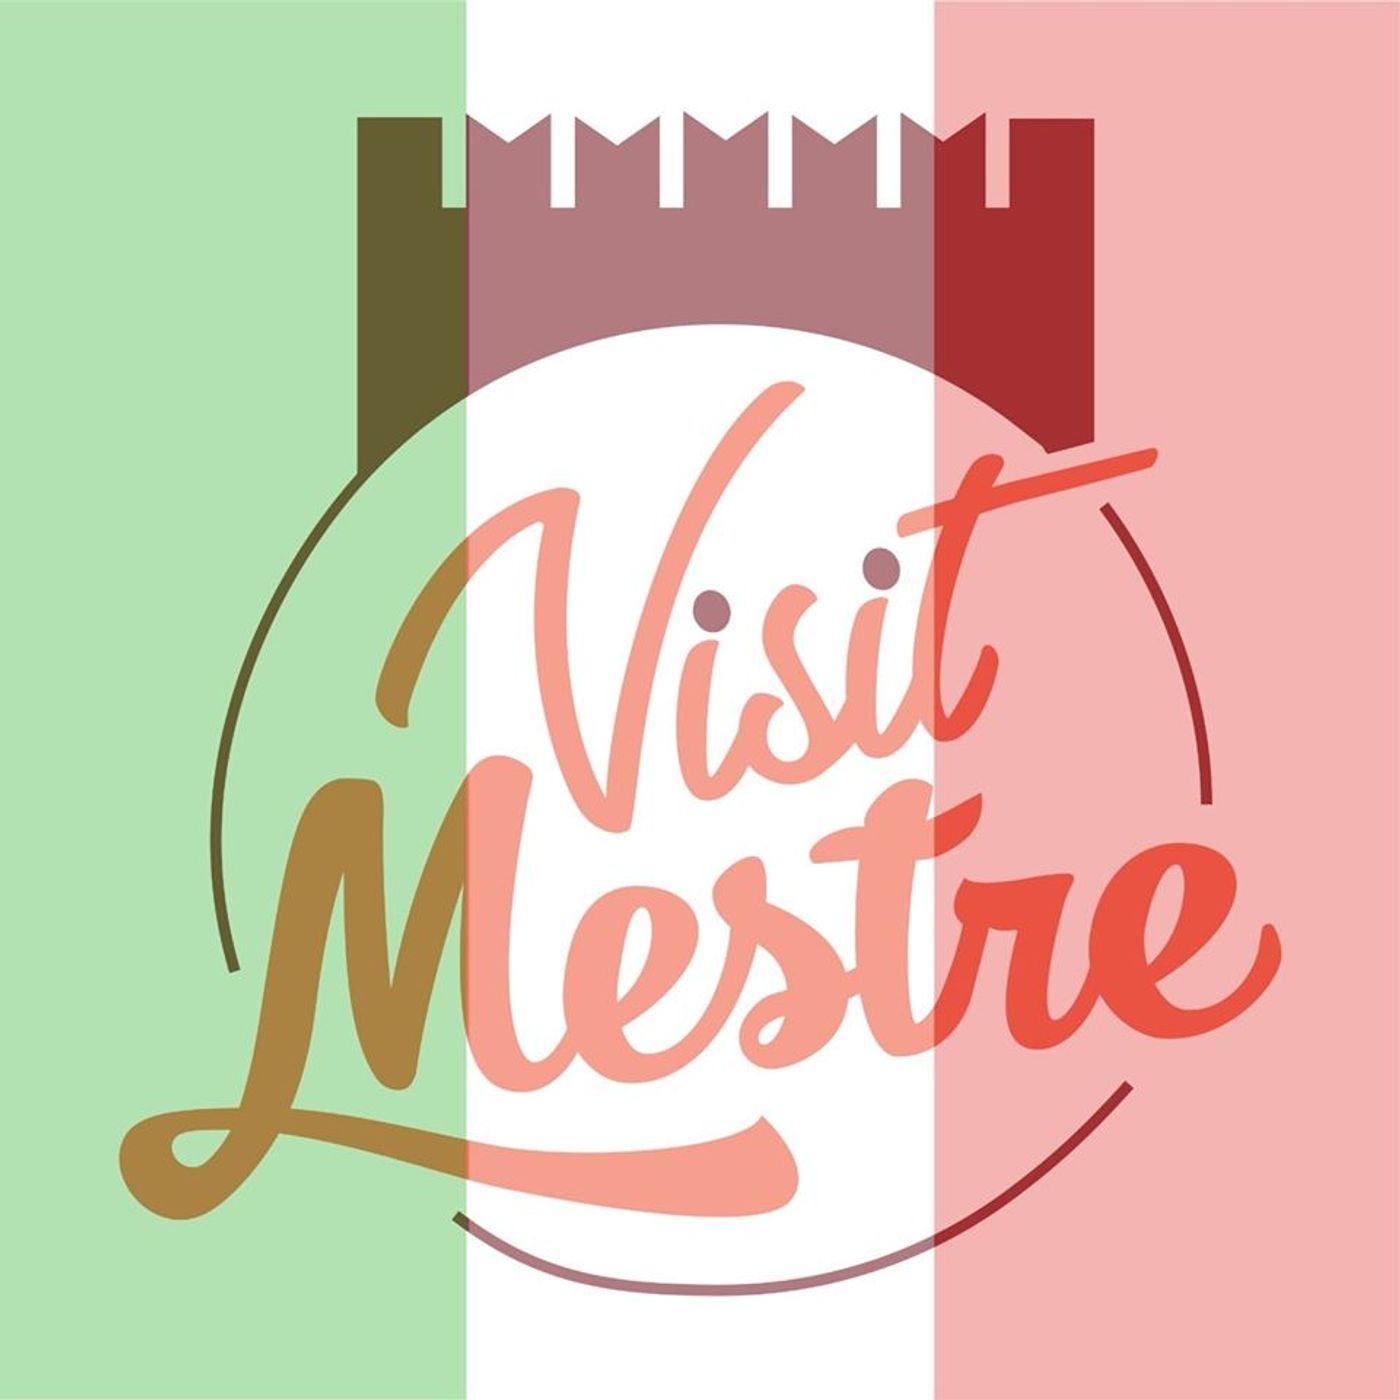 Promuovere la città e la sua immagine: cinque giovani danno vita a Visit Mestre